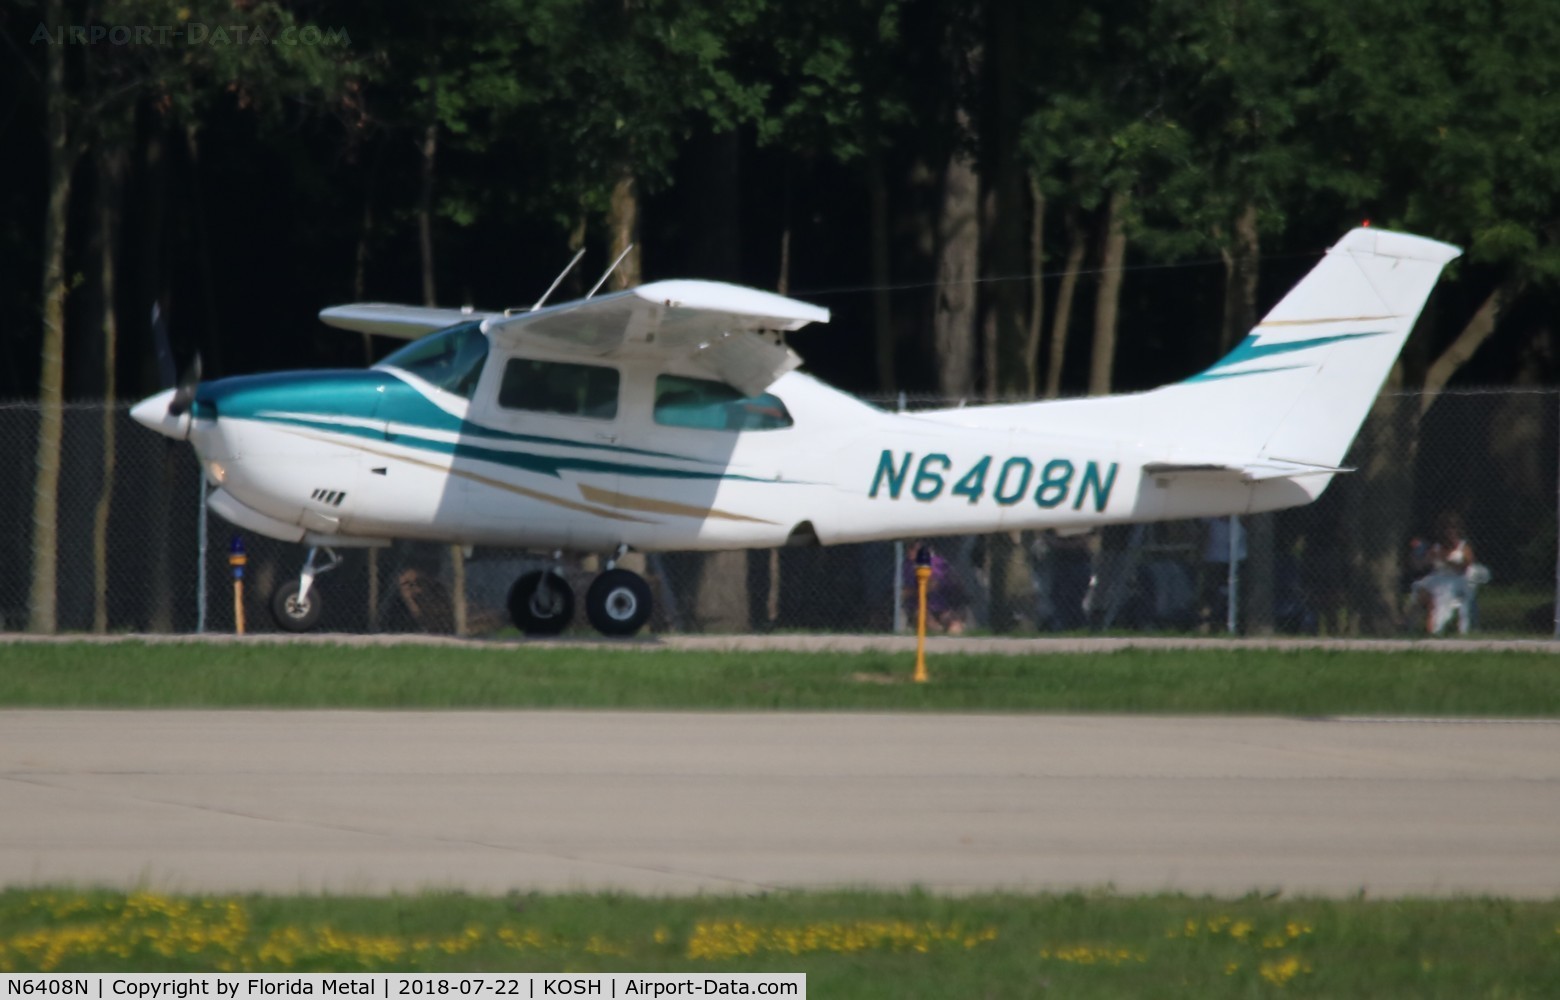 N6408N, 1978 Cessna T210N Turbo Centurion C/N 21062984, Cessna T210N